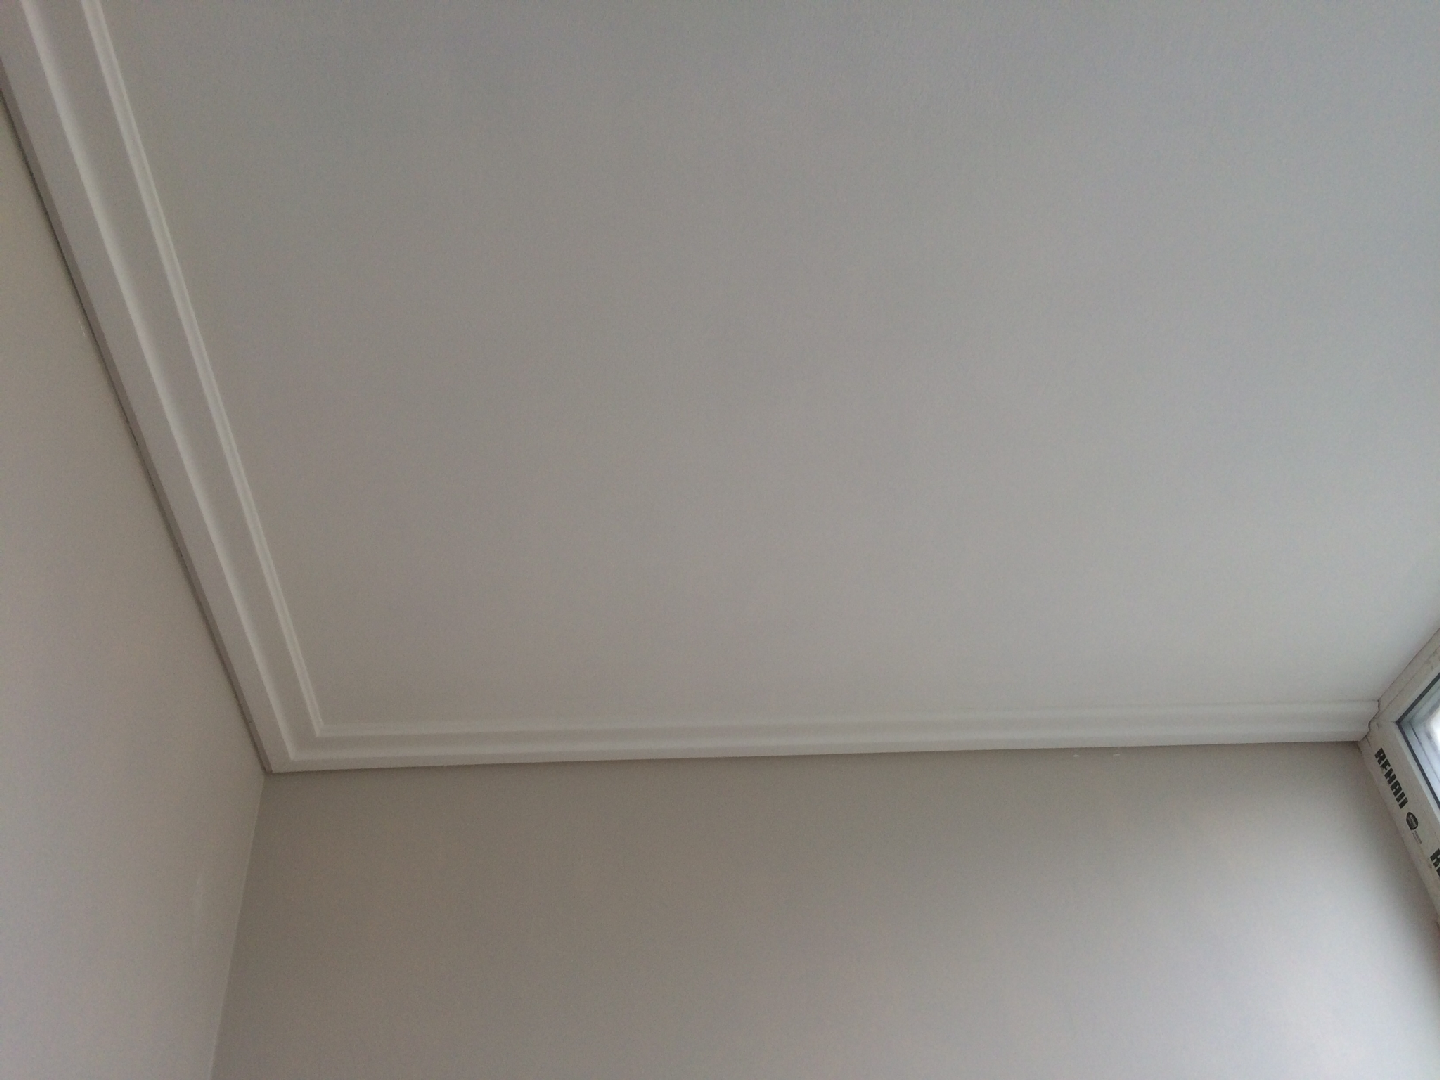 Как правильно приклеить потолочный плинтус-галтель к натяжному потолку: методика от а до я